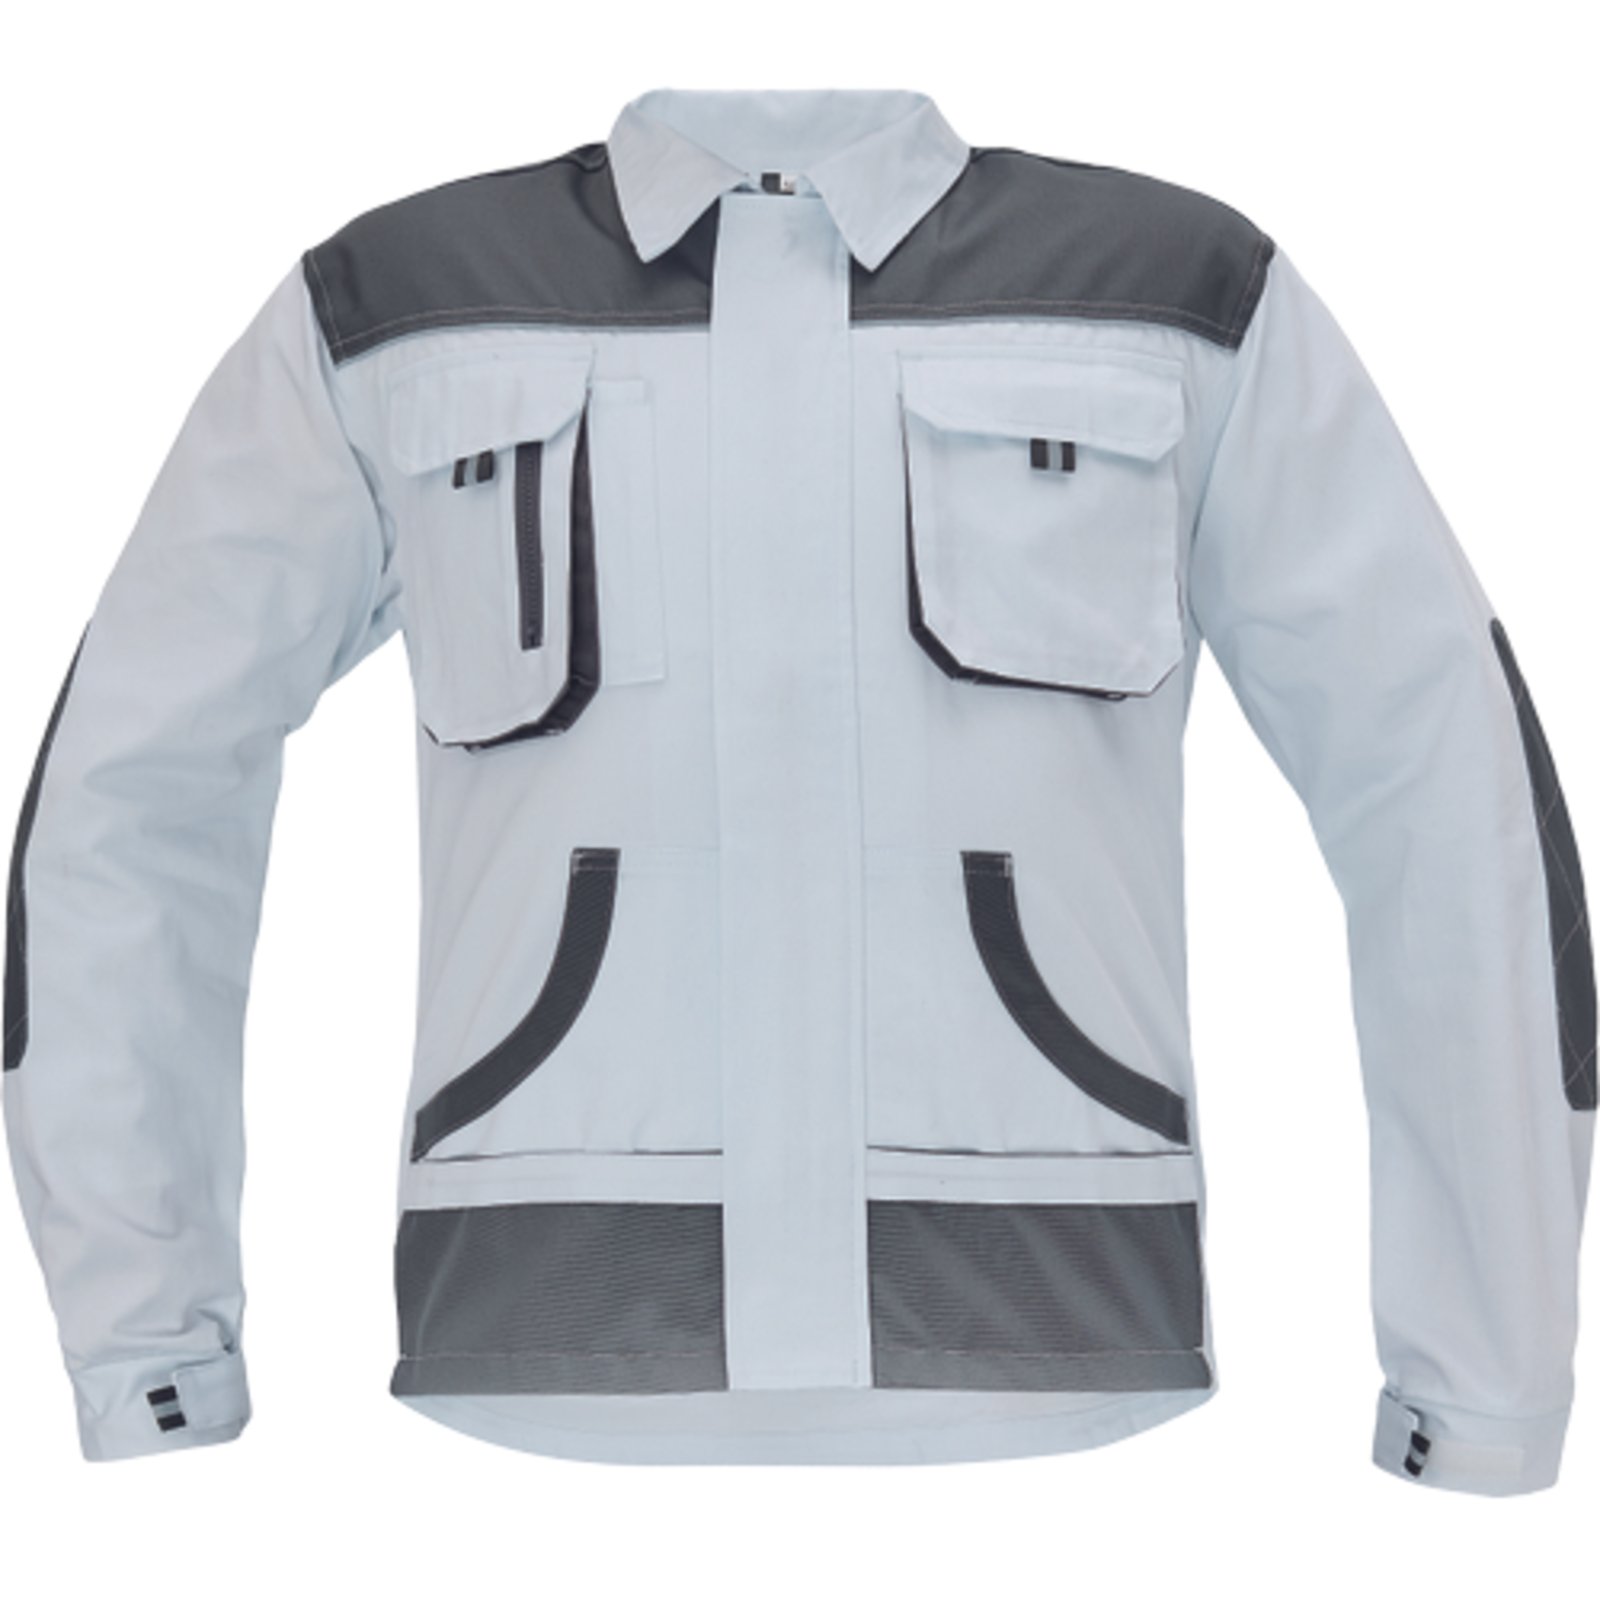 Odolná pracovná bunda Cerva FF Hans - veľkosť: 46, farba: biela/sivá